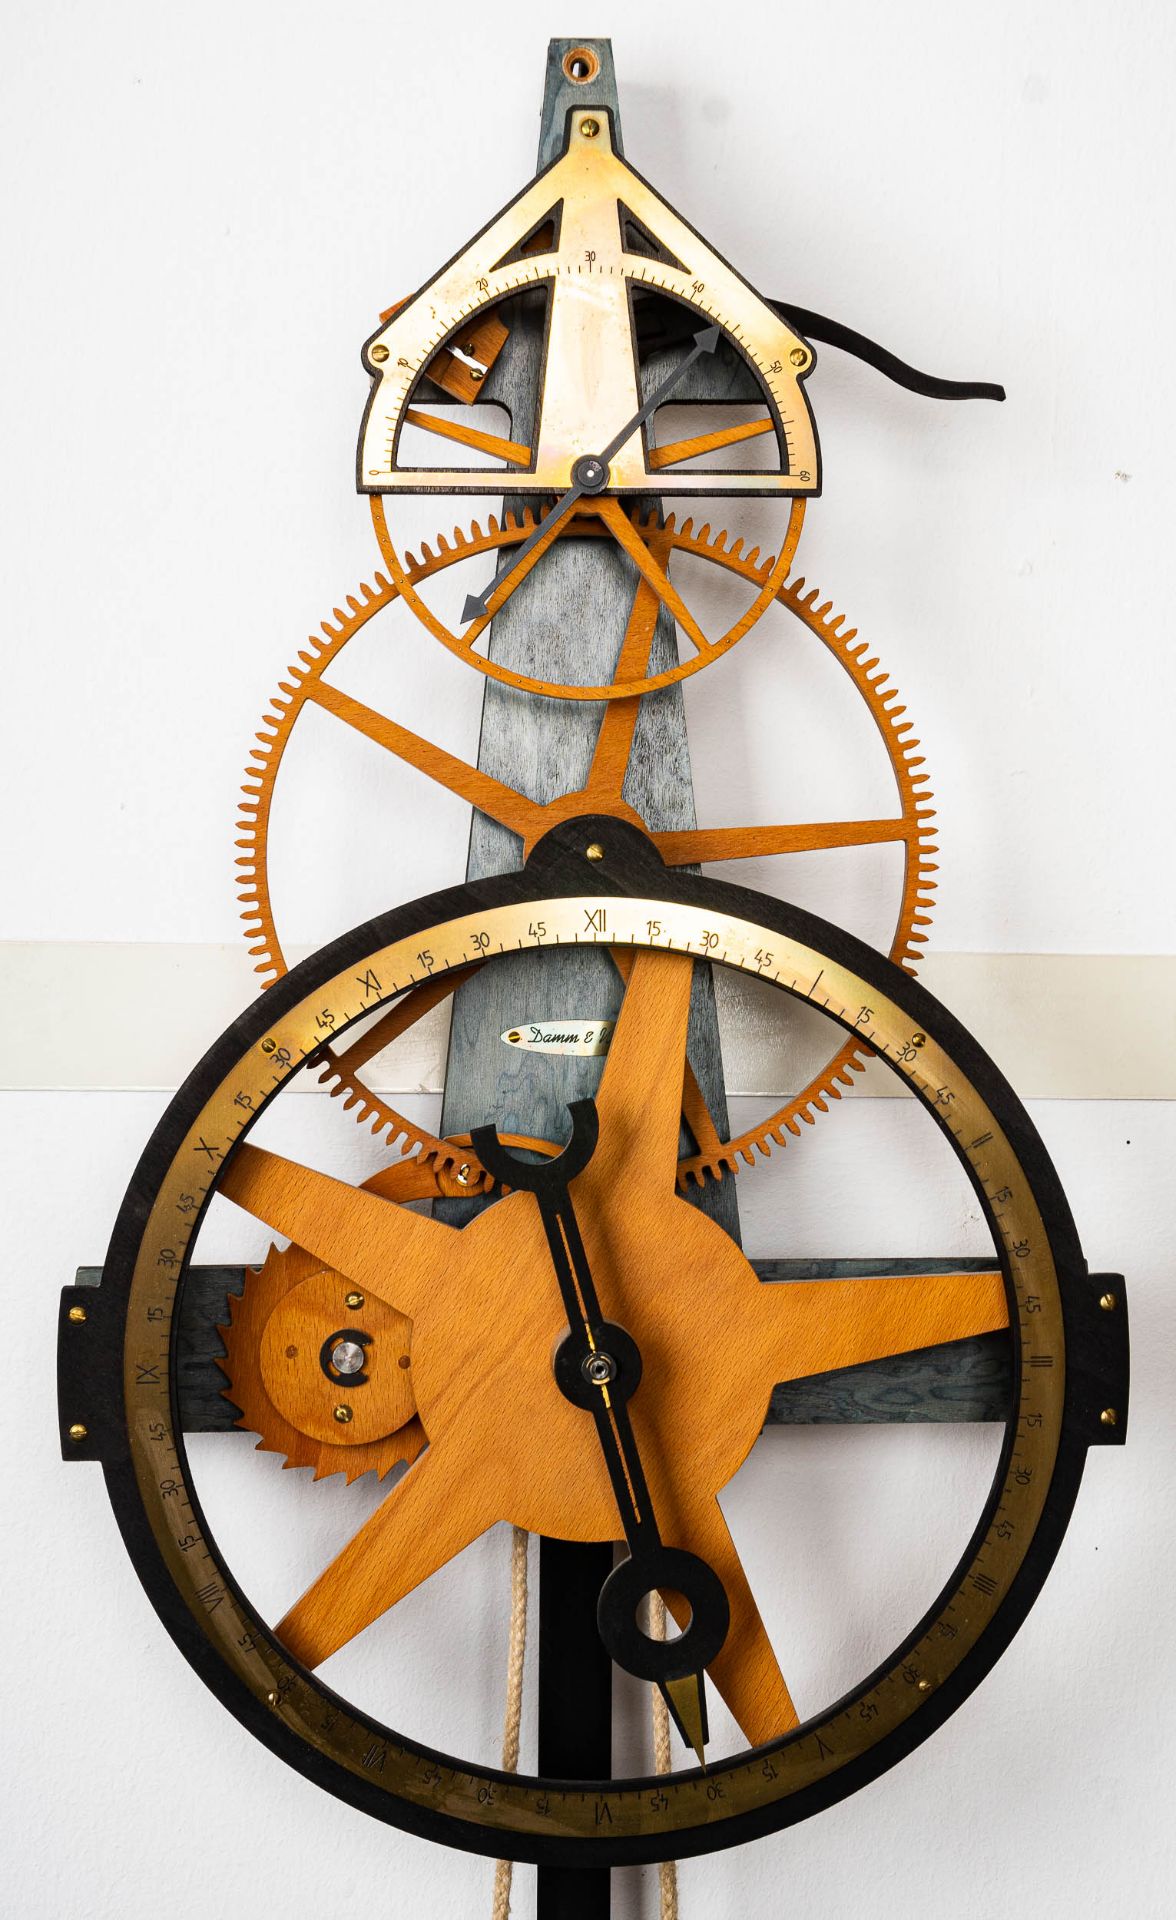 Hölzerne Wanduhr, 2 gewichtiges hölzernes Uhrwerk der Marke "Damm & Wolff", rüc - Bild 2 aus 12